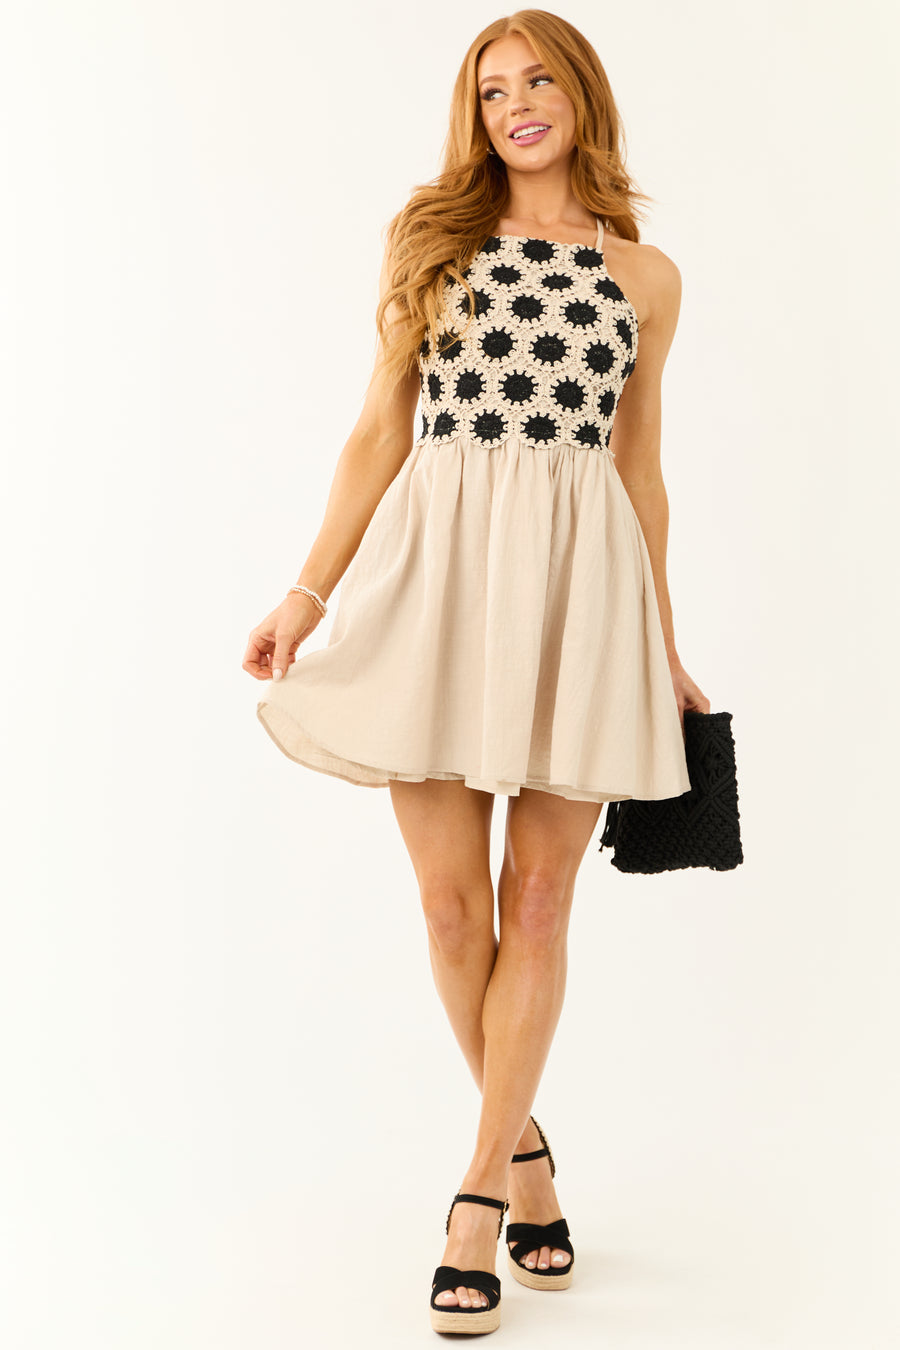 Almond Crochet Top Short Dress